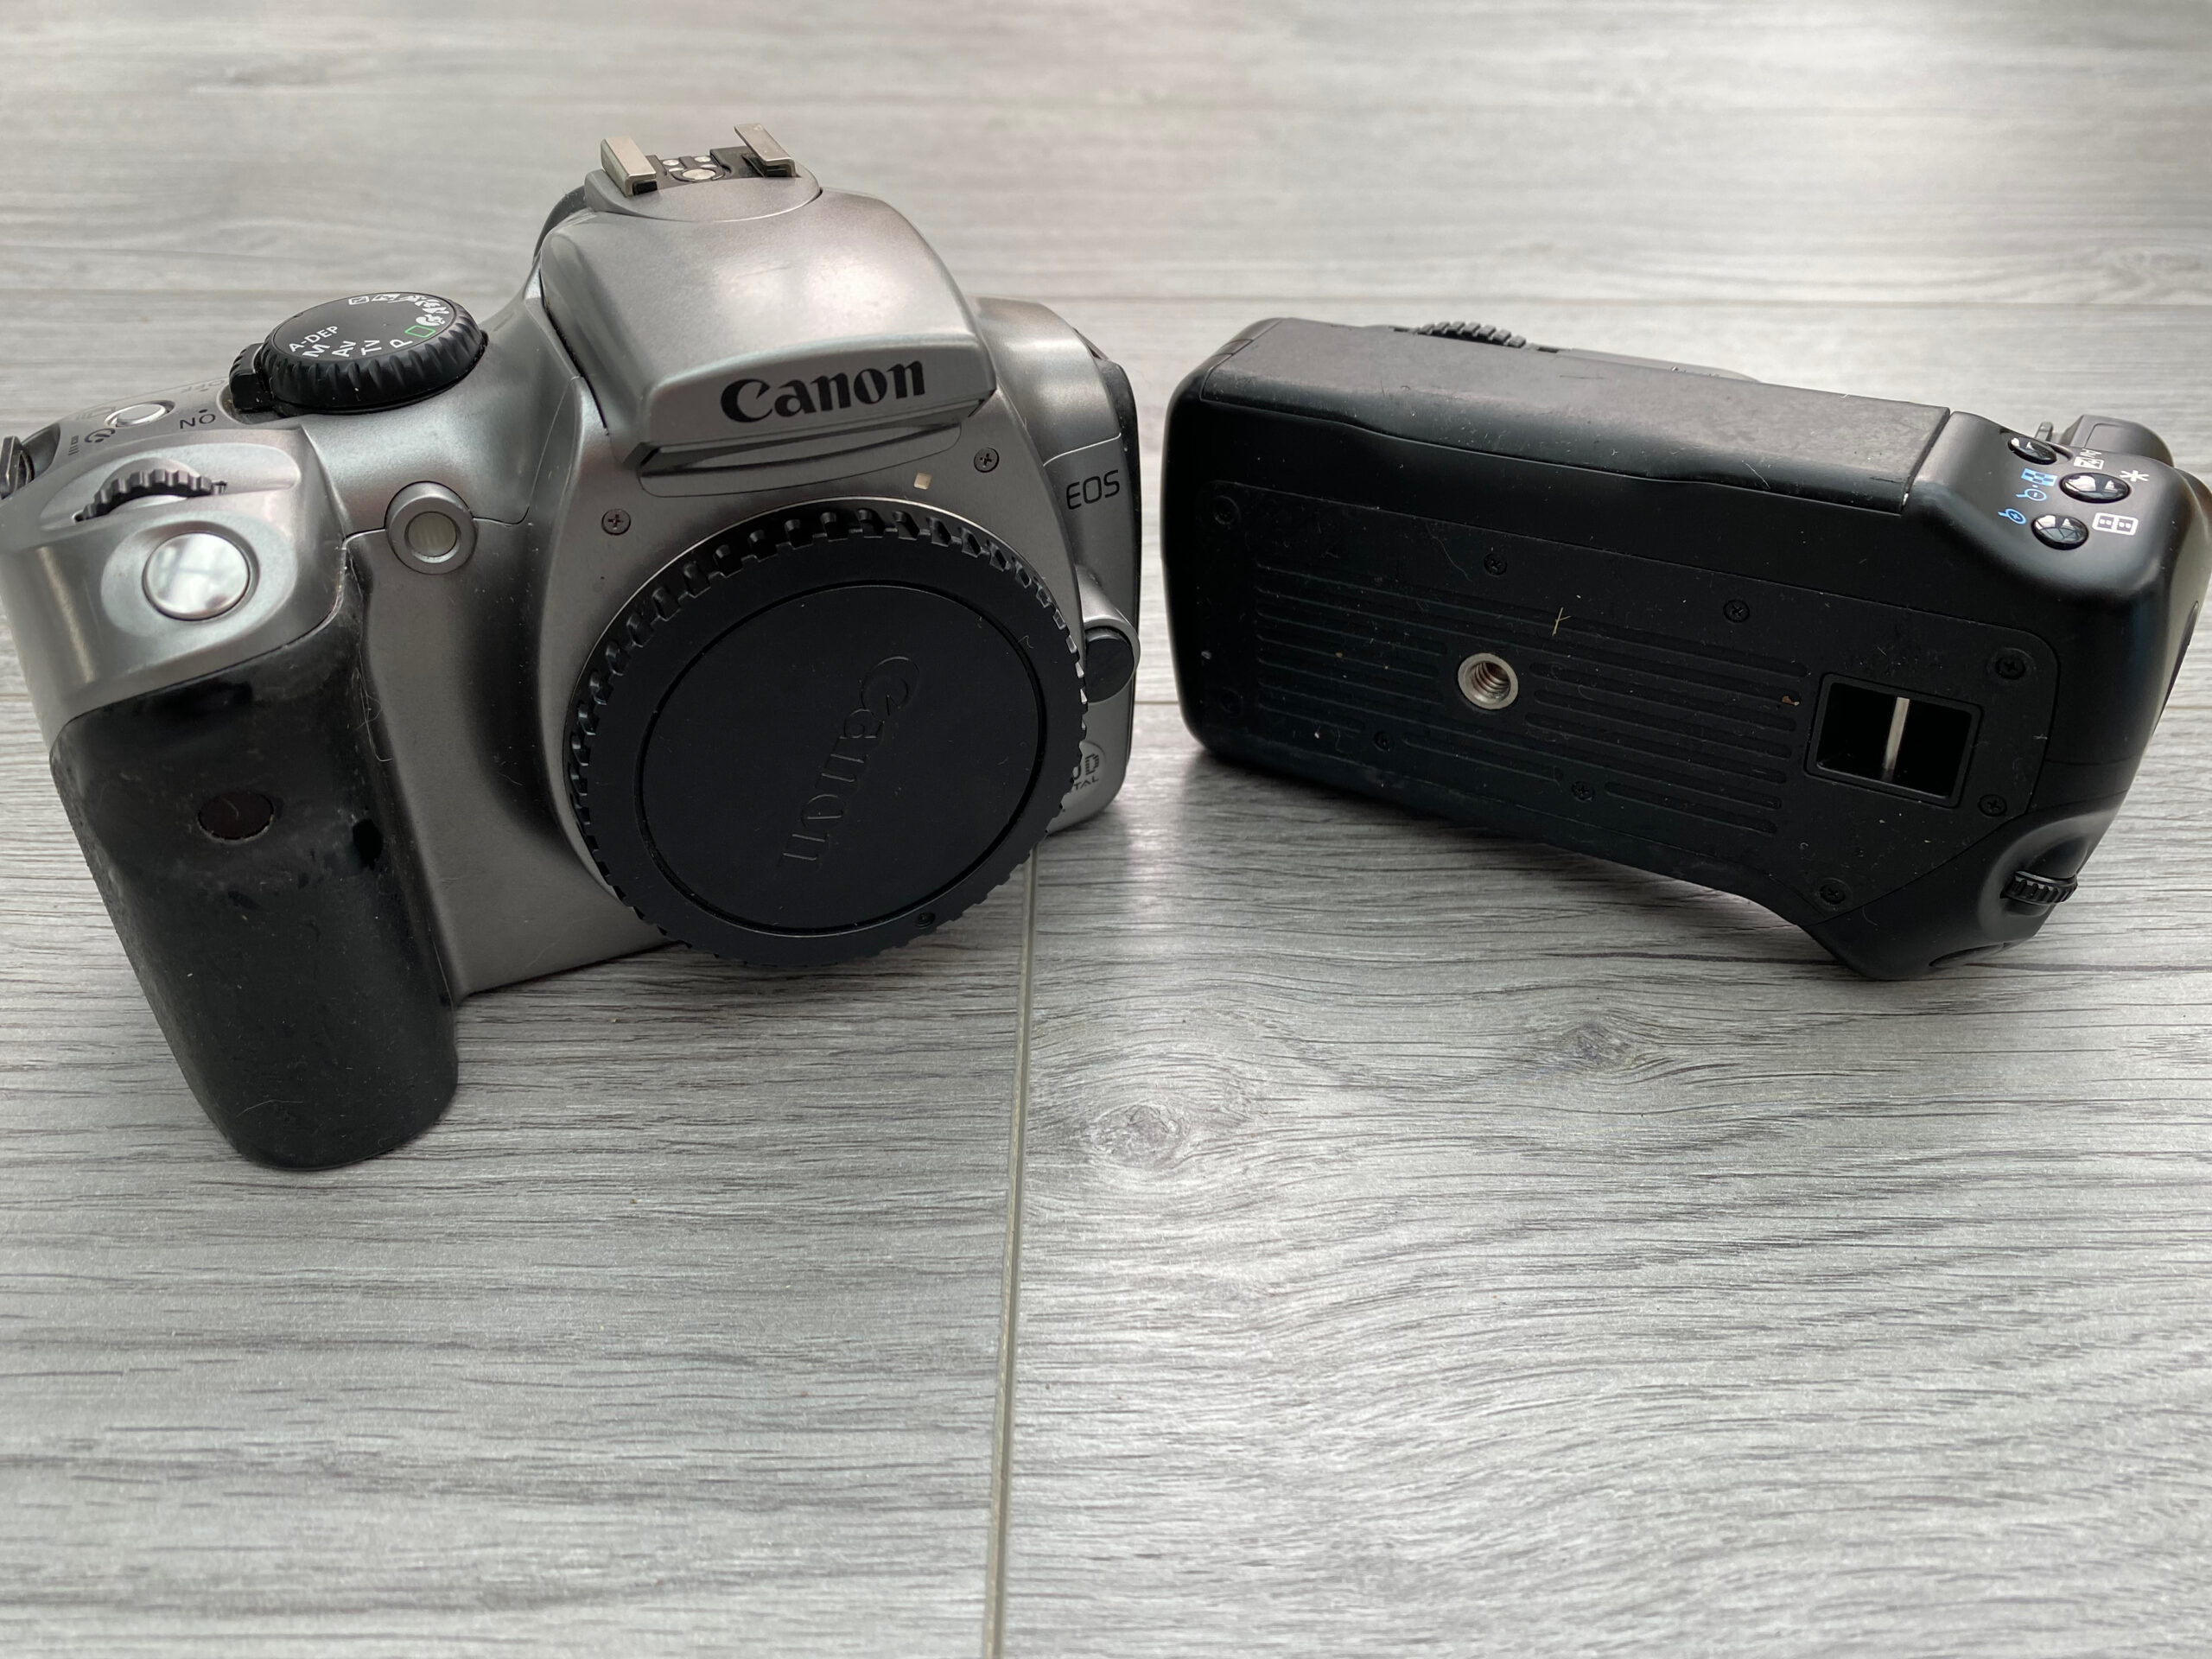 Canon 300D (Digital Rebel) - A budget step too far? Part 2 - A retrospective review